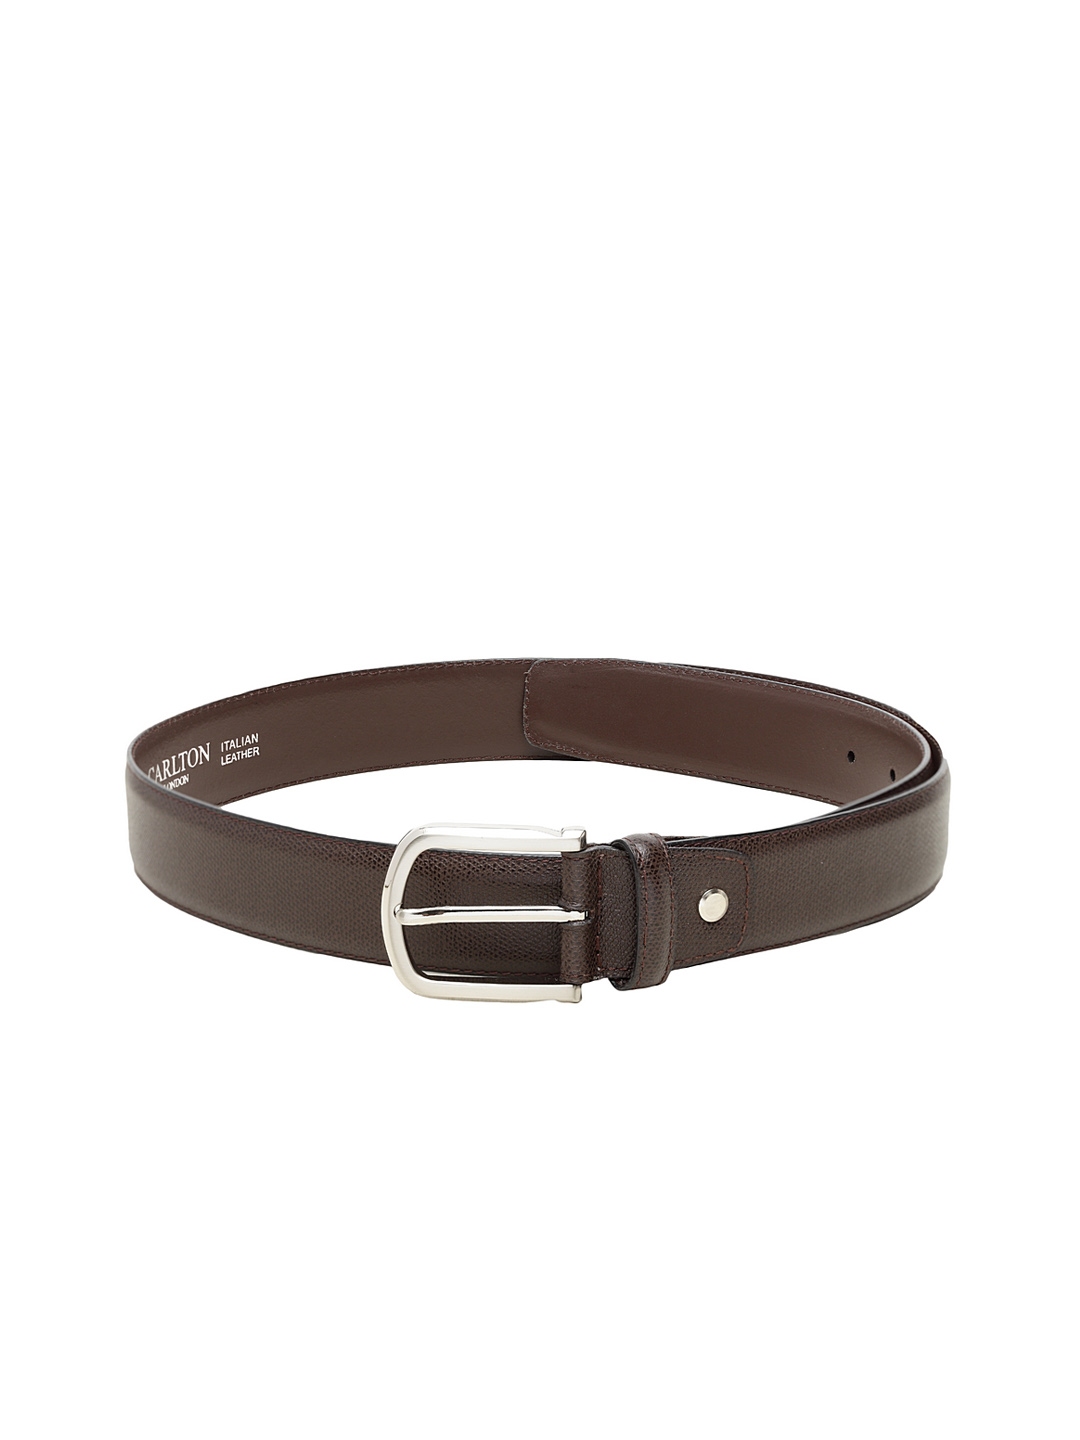 Buy Carlton London Men Brown Solid Leather Belt - Belts for Men ...